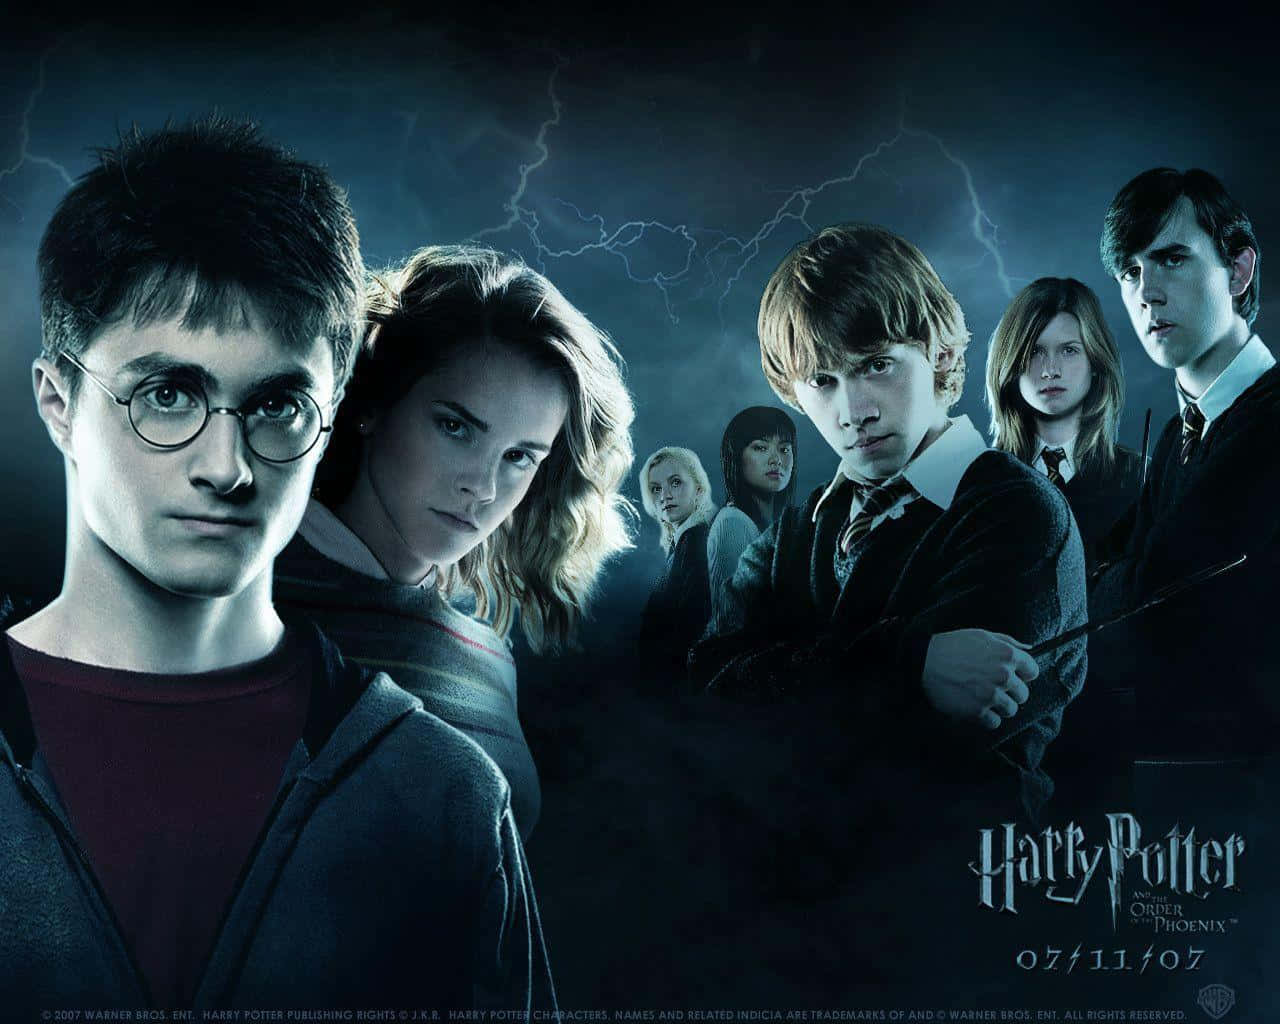 Tuttii Personaggi Principali Di Harry Potter Insieme In Una Epica Foto Di Gruppo Sfondo